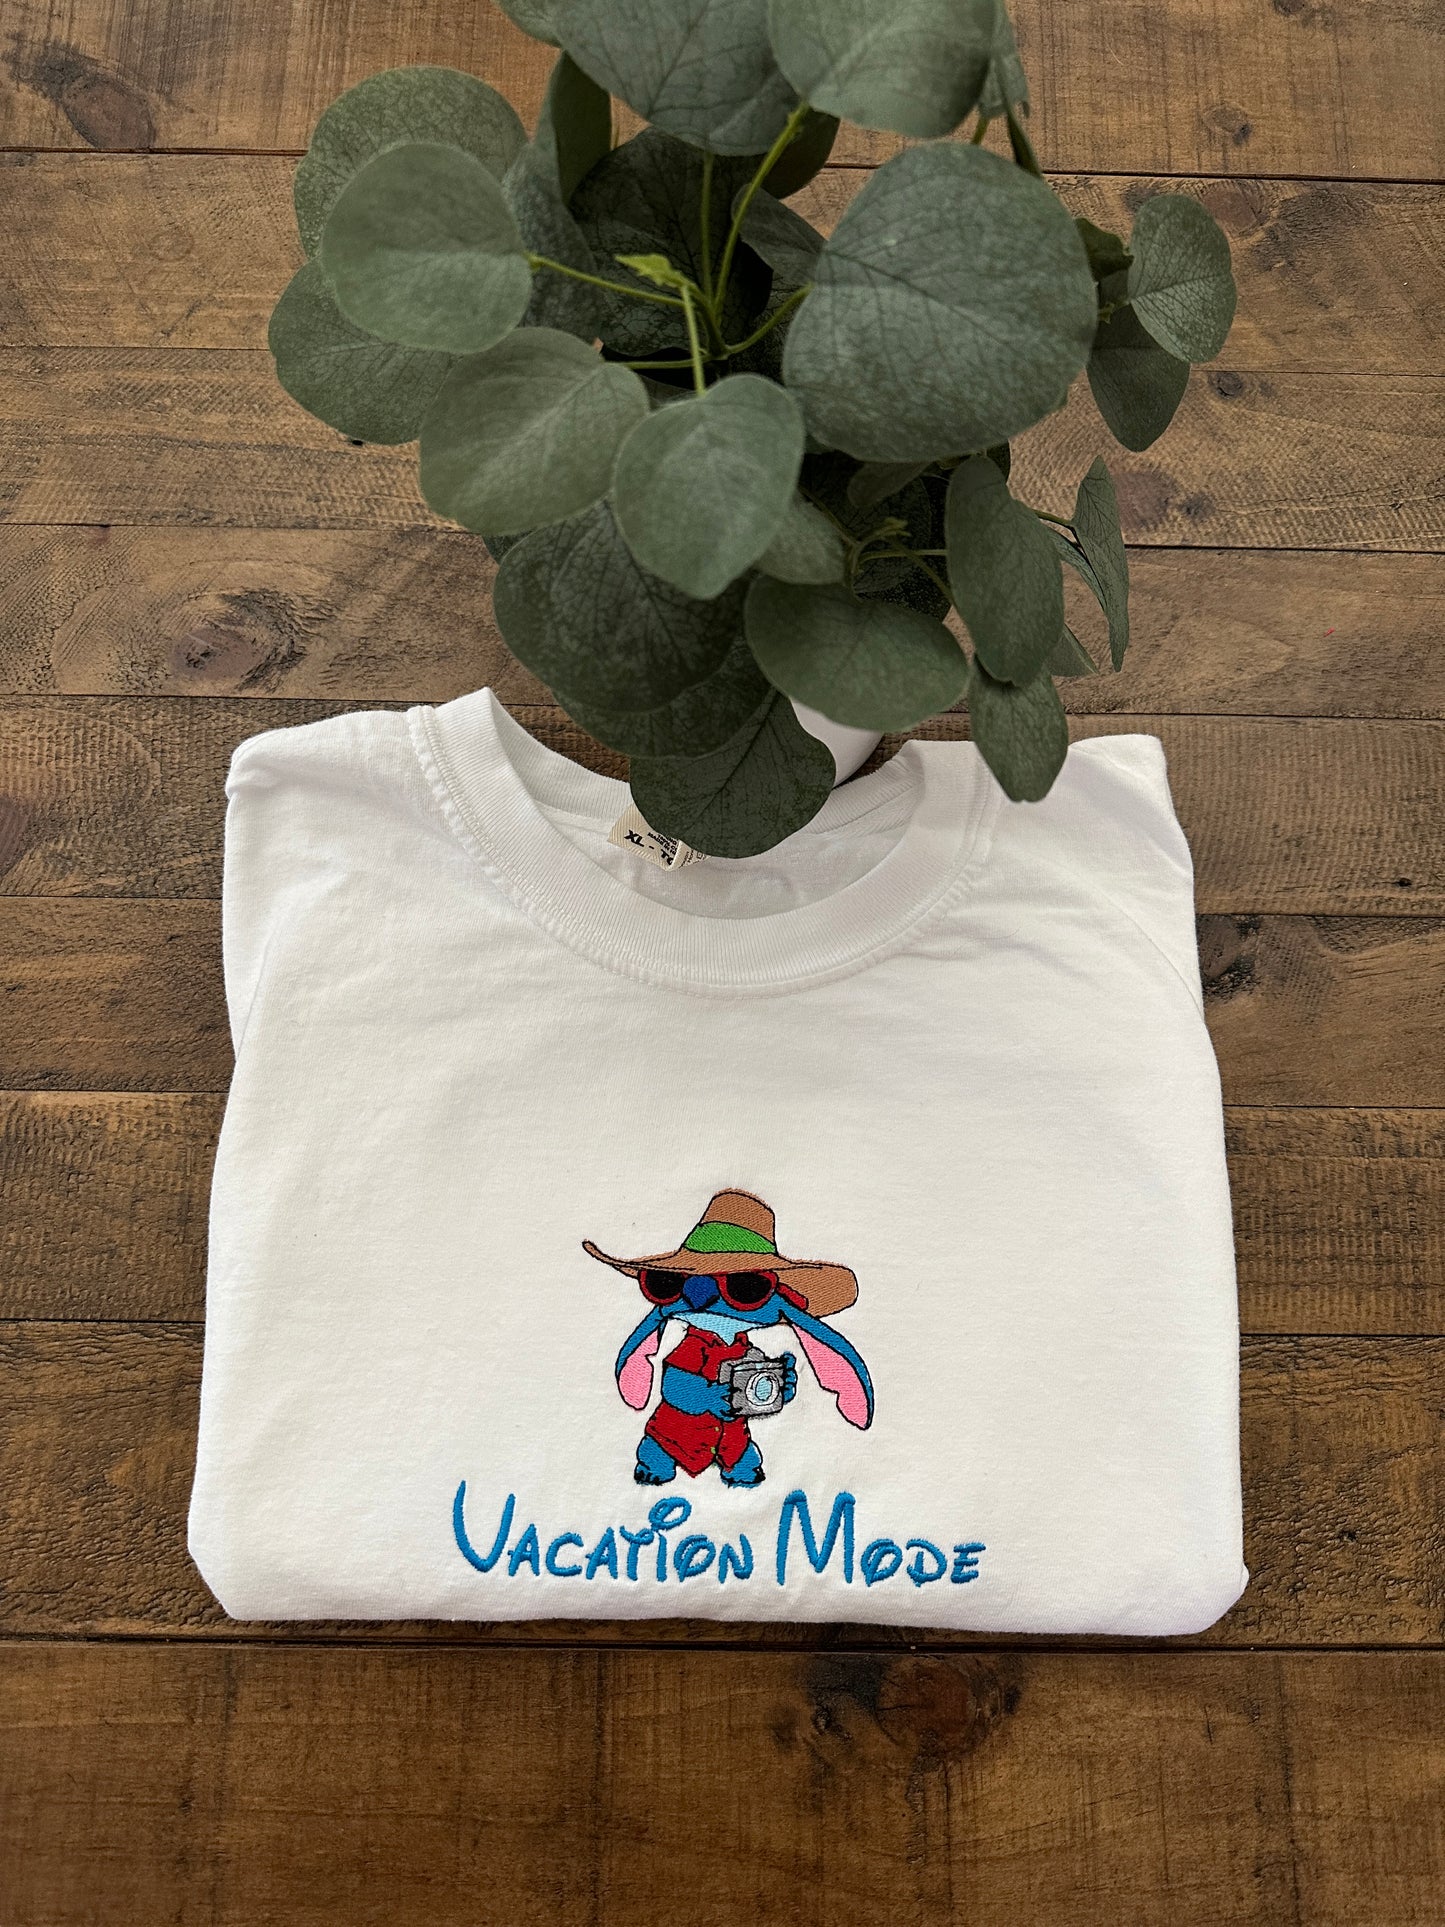 Vacation Mode Stitch